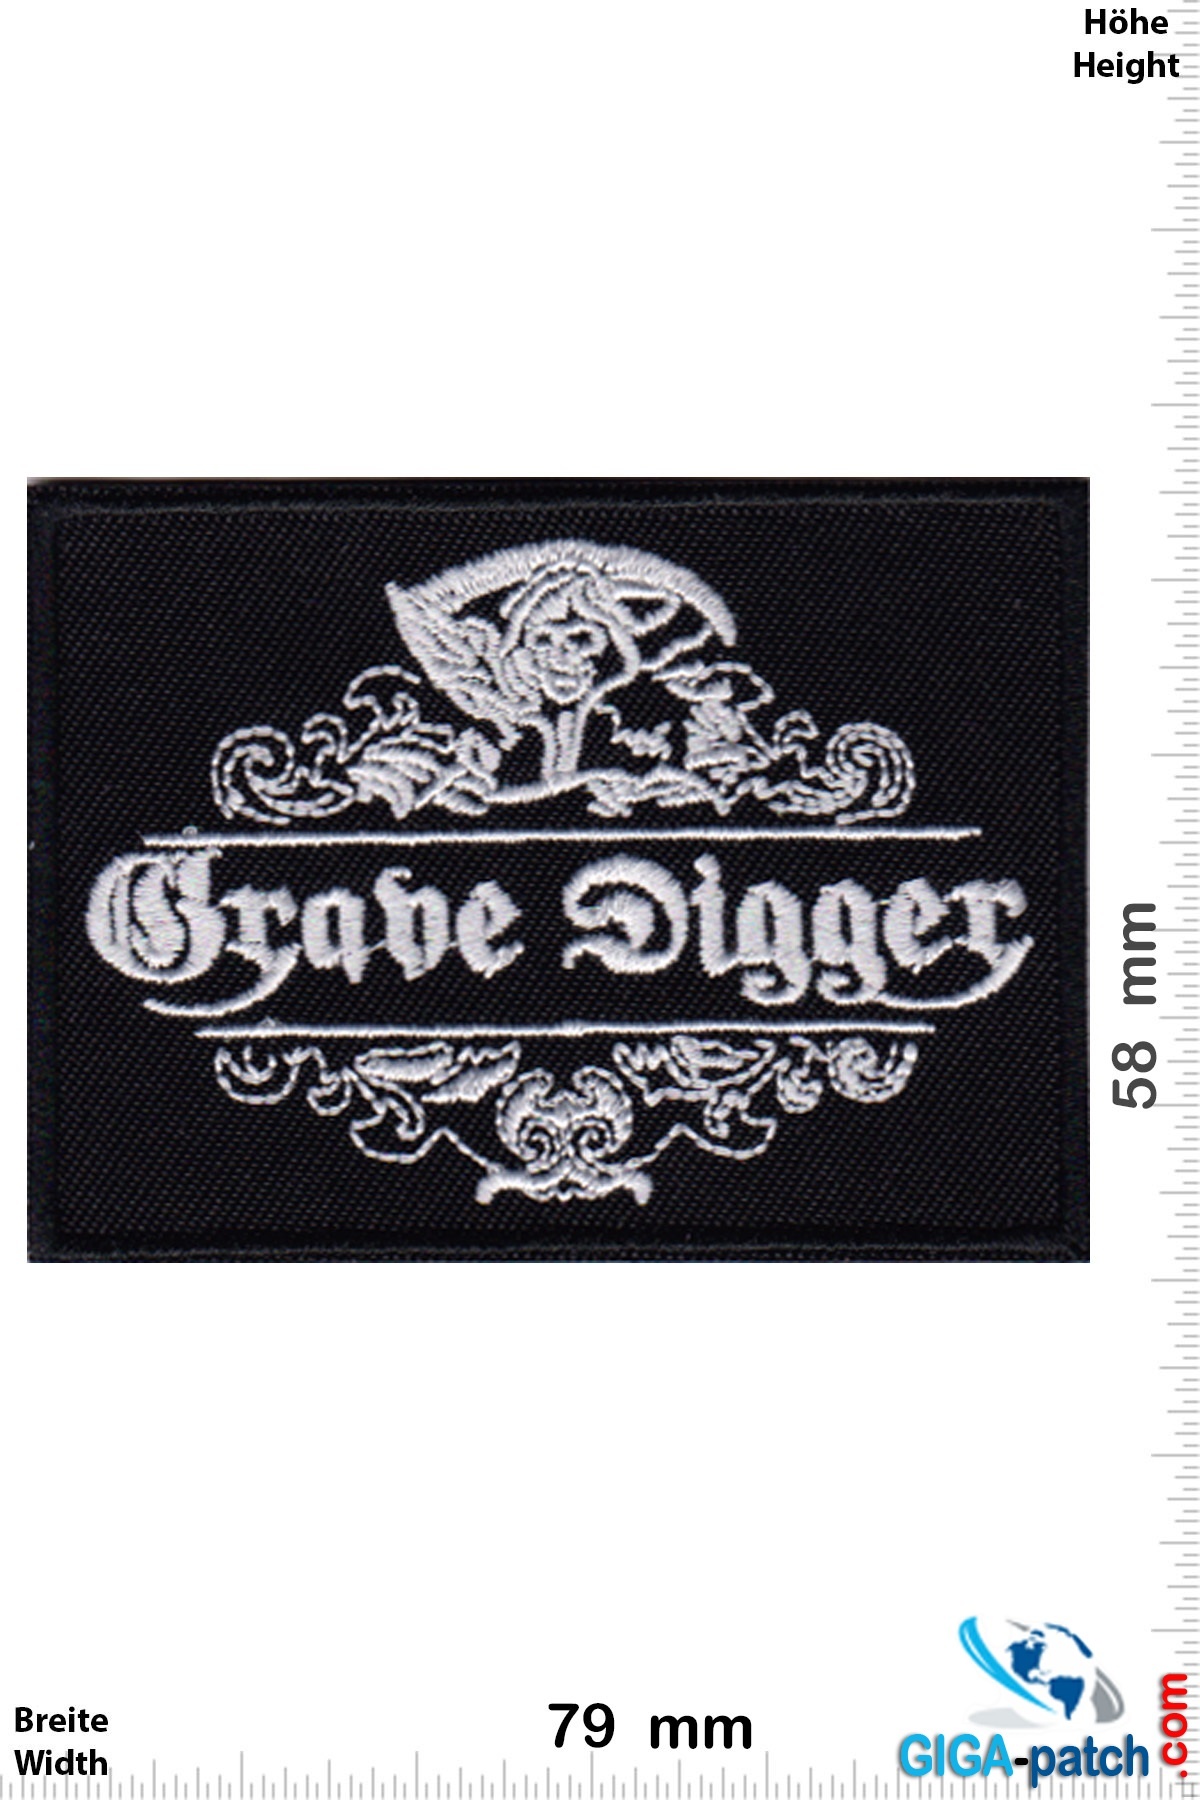 Grave Digger - Metal-Band